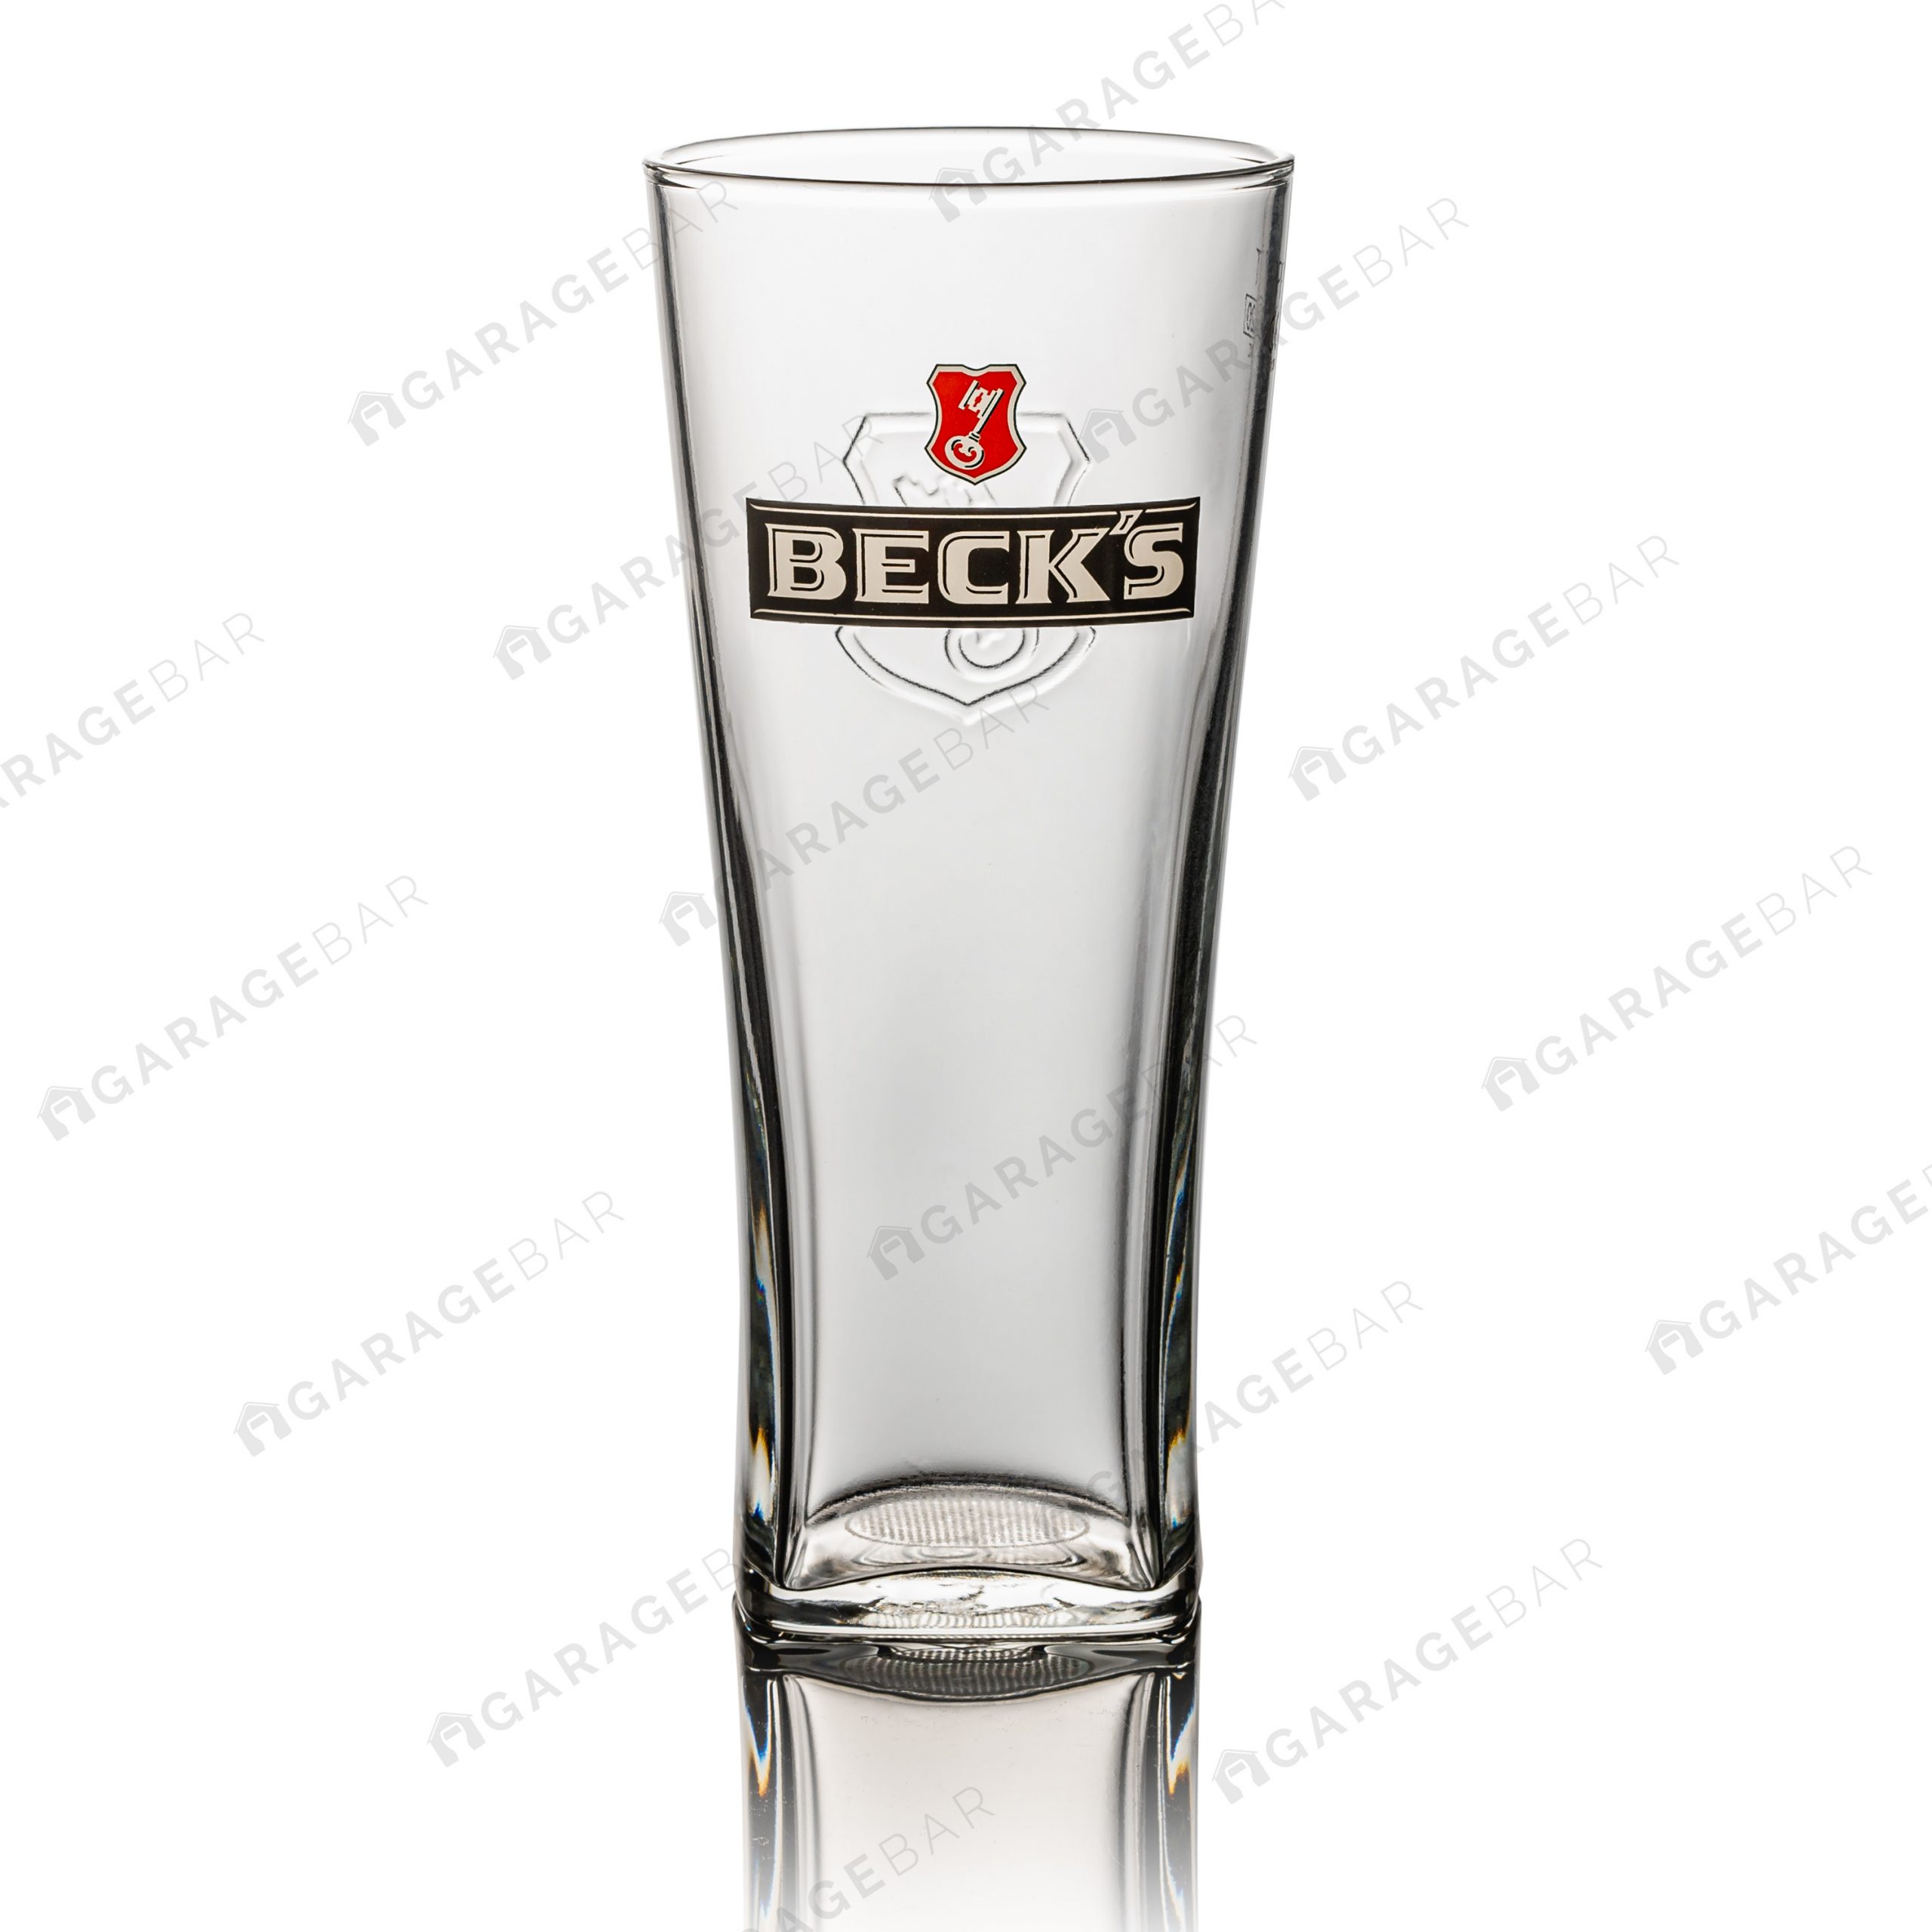 Becks Pint Beer Glass